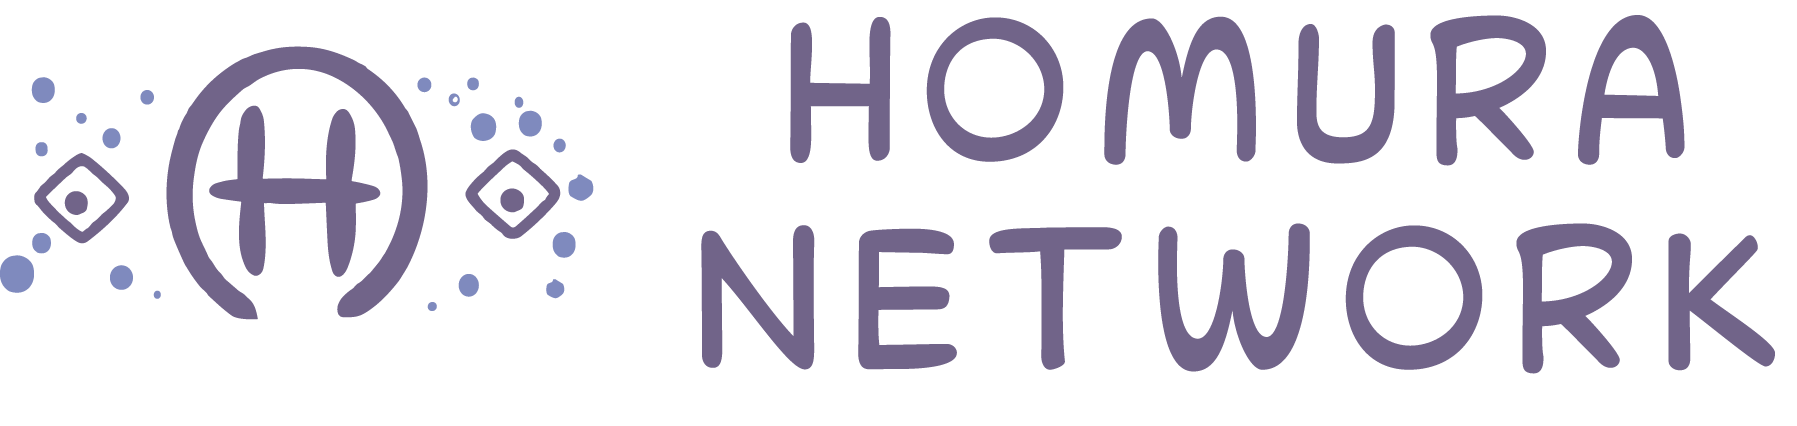 Homura Network Logo